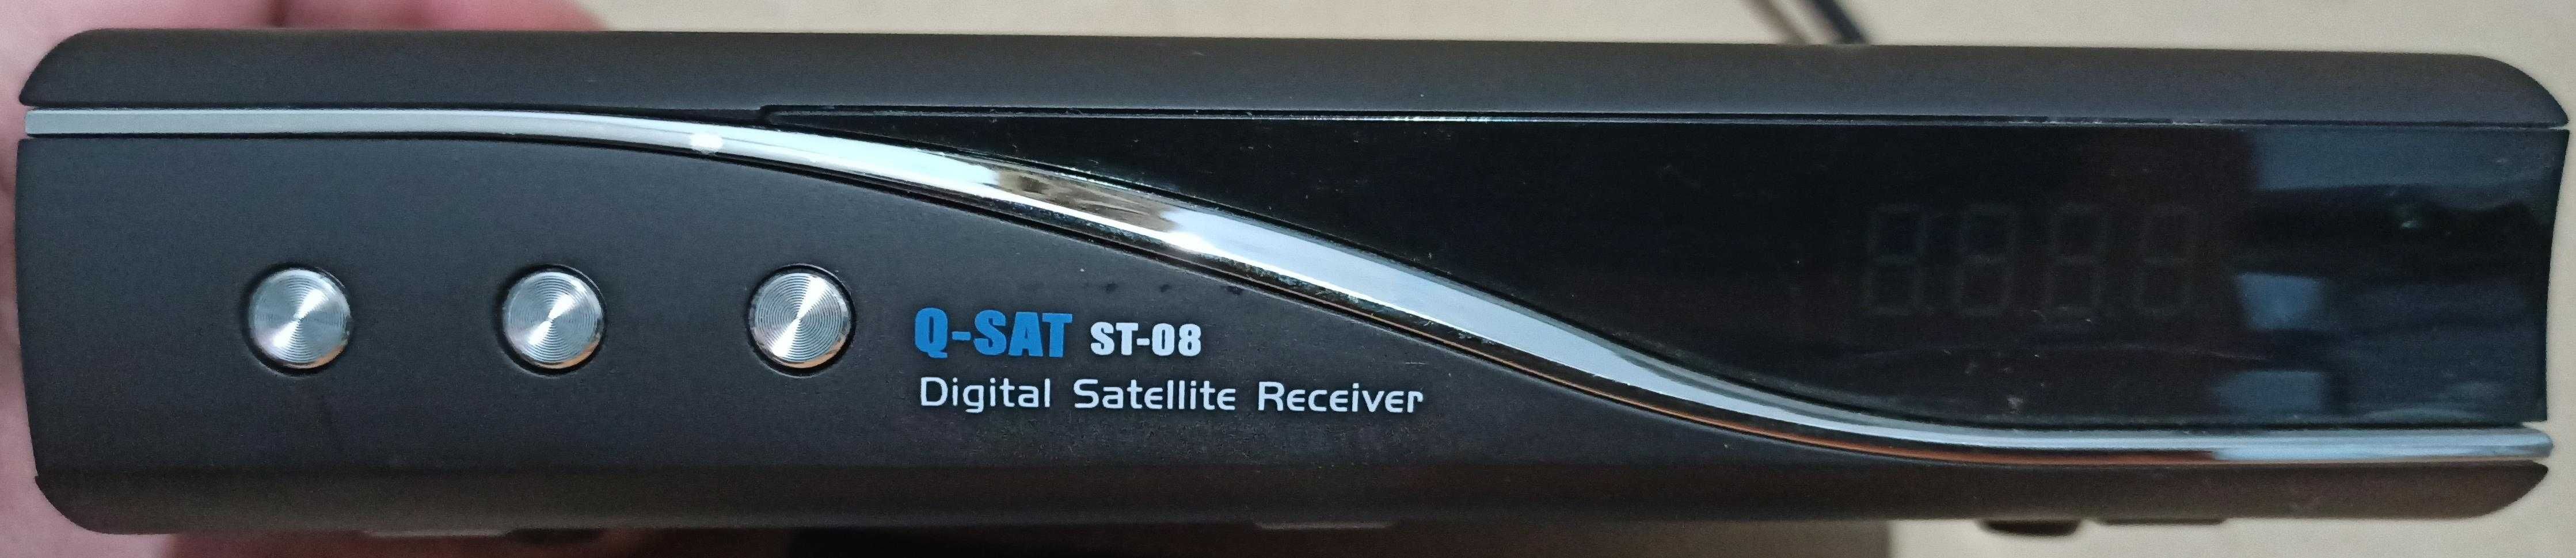 Продам спутниковый, цифровой ресивер Q-SAT st-08 б/у